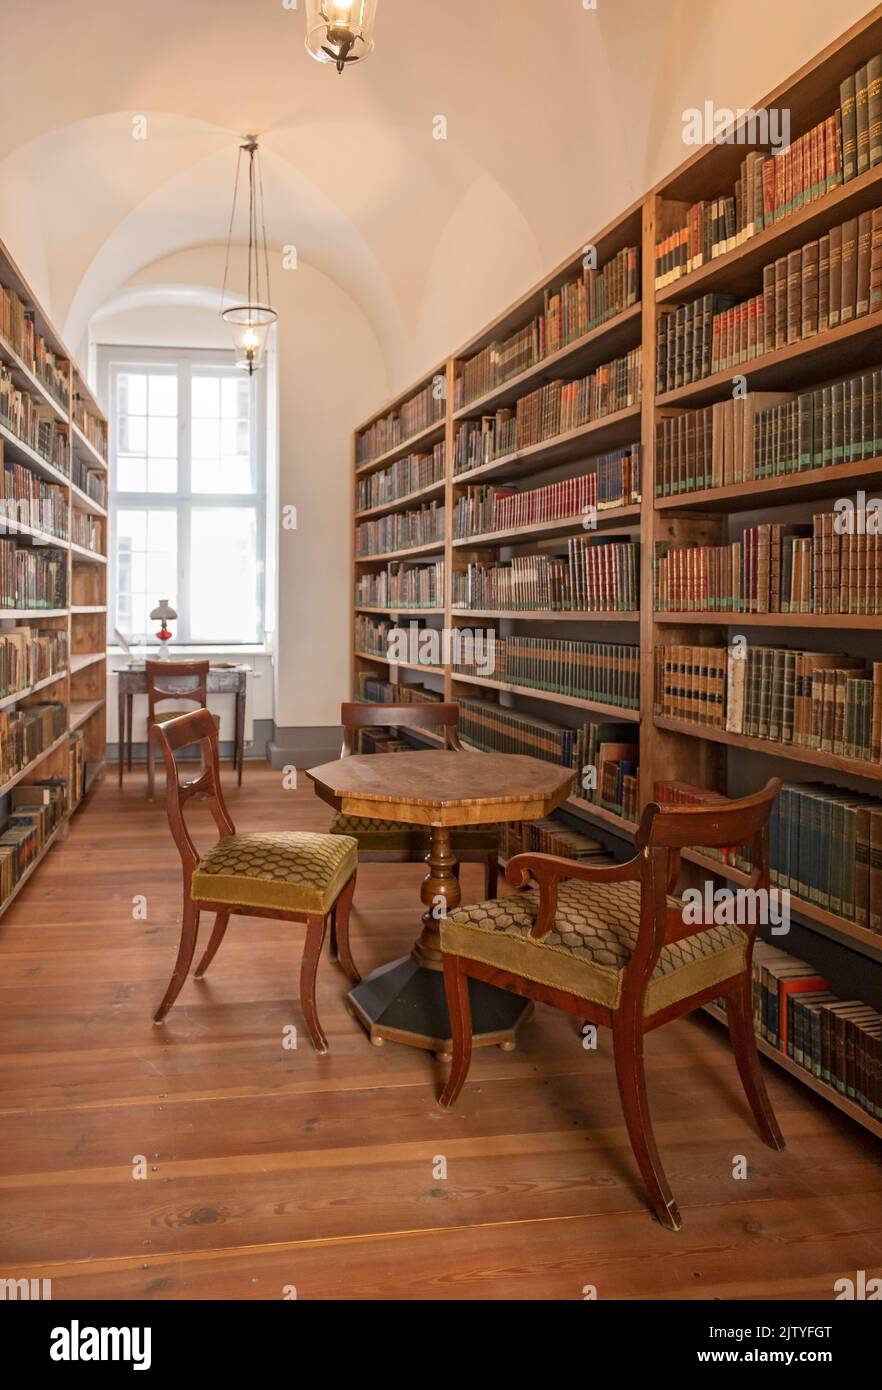 Sala bibliotecaria, Biblioteca de Ciencias de la Alta Lusacia, Barockhaus, Görlitz (Goerlitz), Alemania Foto de stock